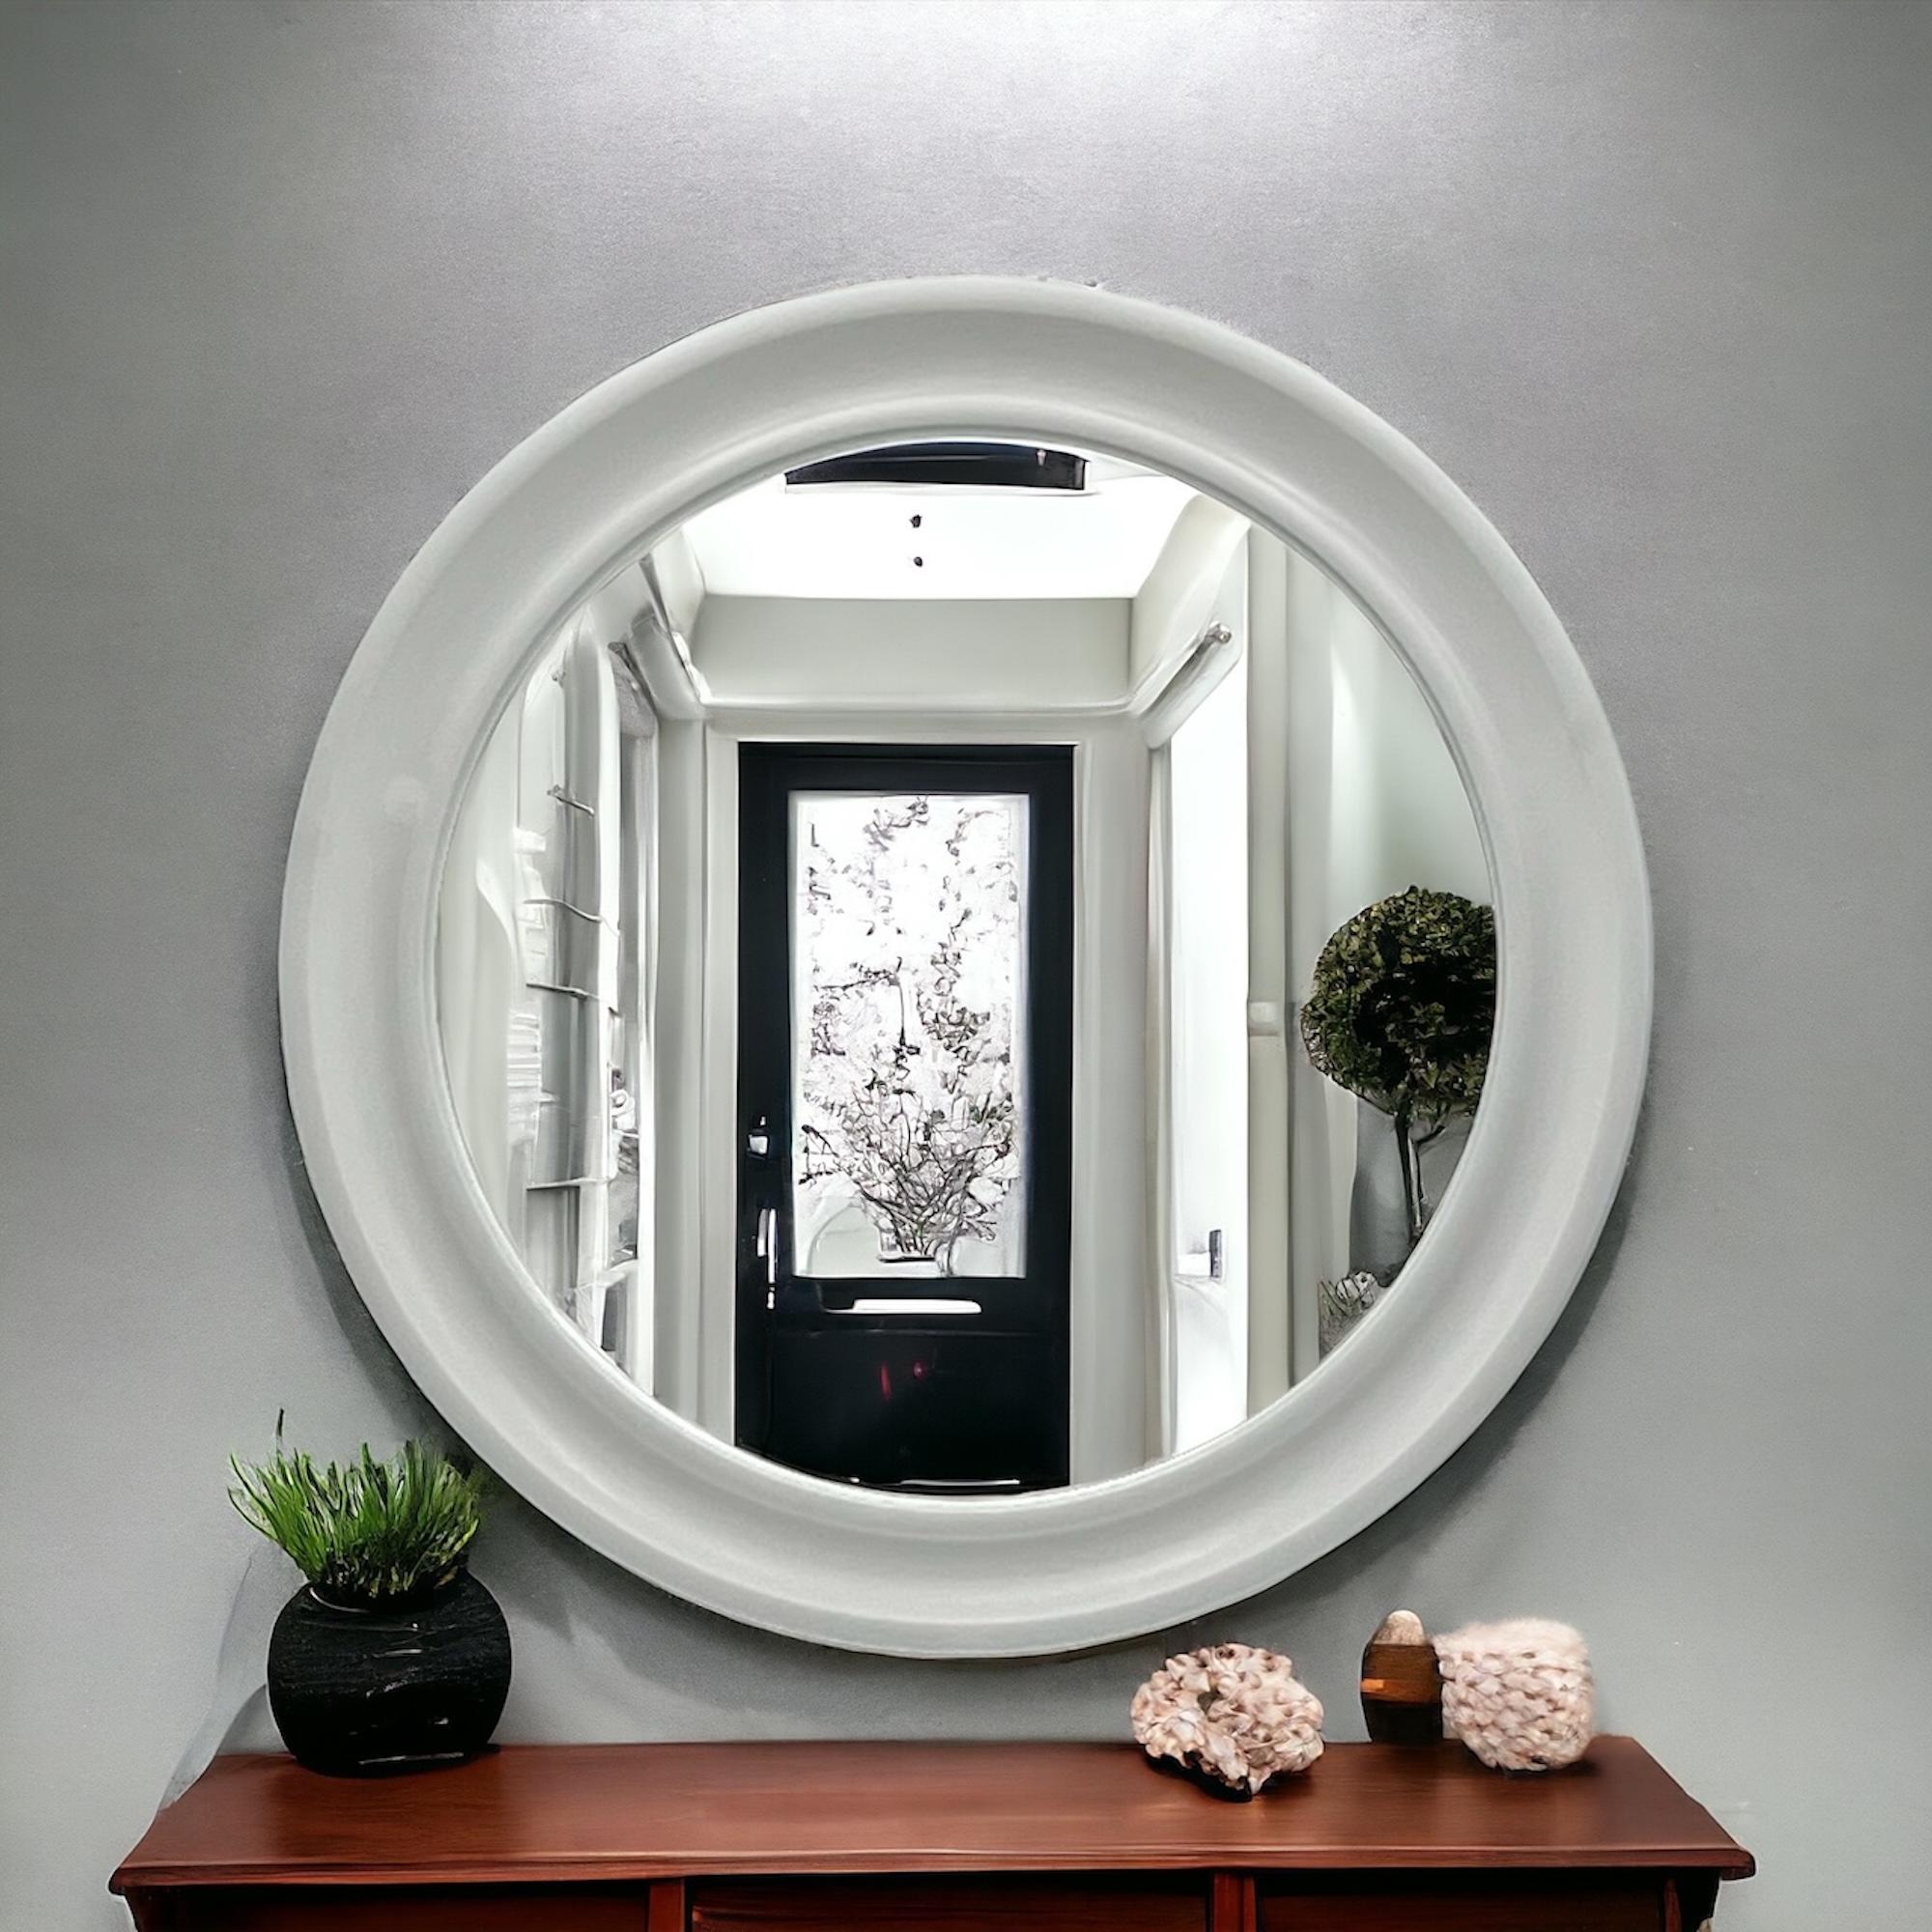 Plastic Carrara & Matta 'America' Wall Mirror in off-white - 70s Patent Bakelite Design